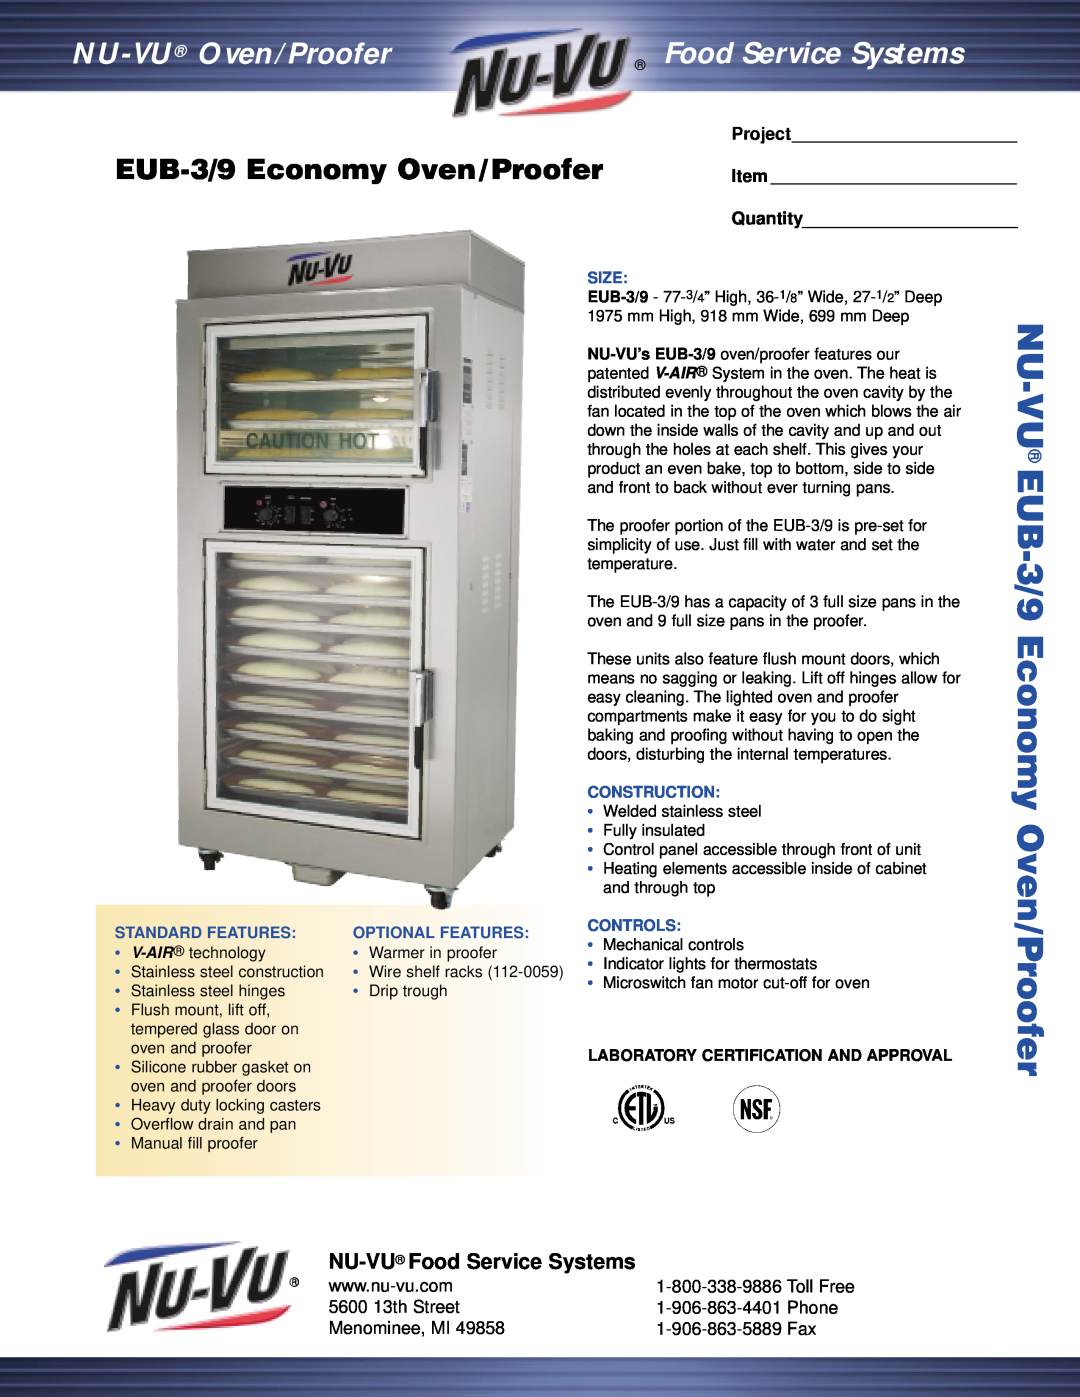 Nu-Vu manual EUB-3/9Economy Oven/Proofer, NU-VU Food Service Systems, 5600 13th Street, Phone, Menominee, MI, Project 